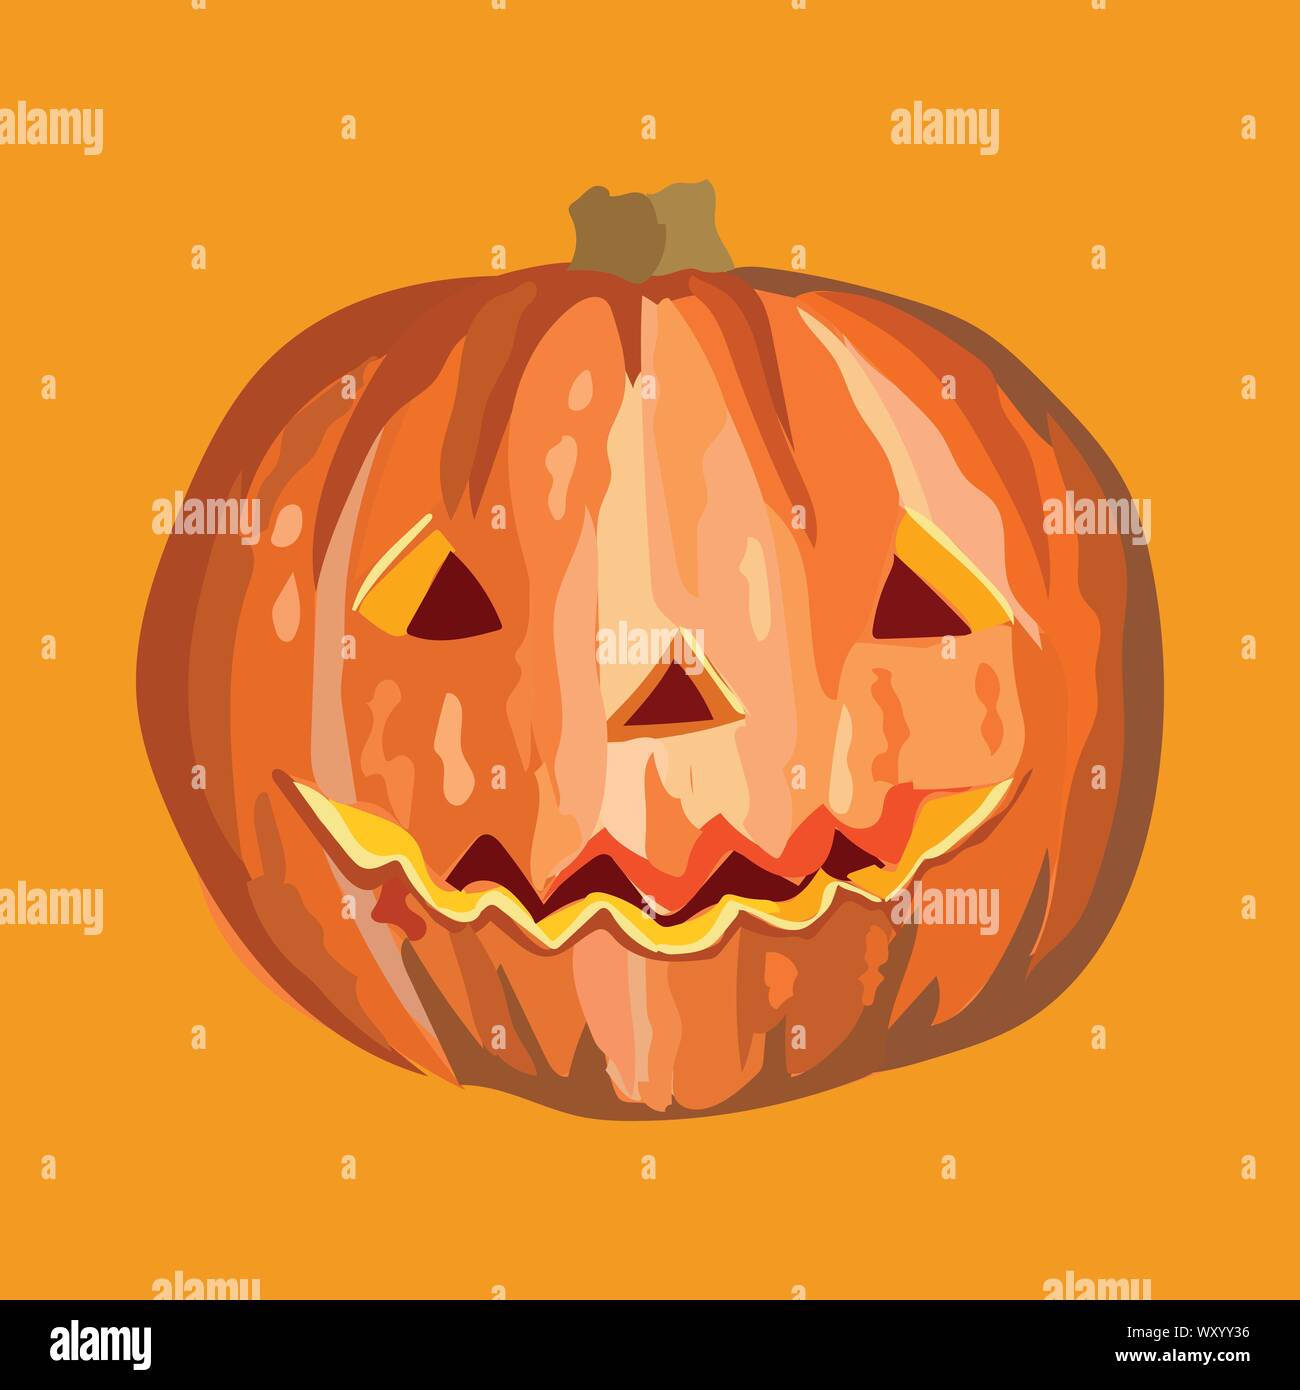 Vector orange citrouille Halloween effrayant avec sourire isolé sur fond orange, vecteur illustration stock coloré Illustration de Vecteur